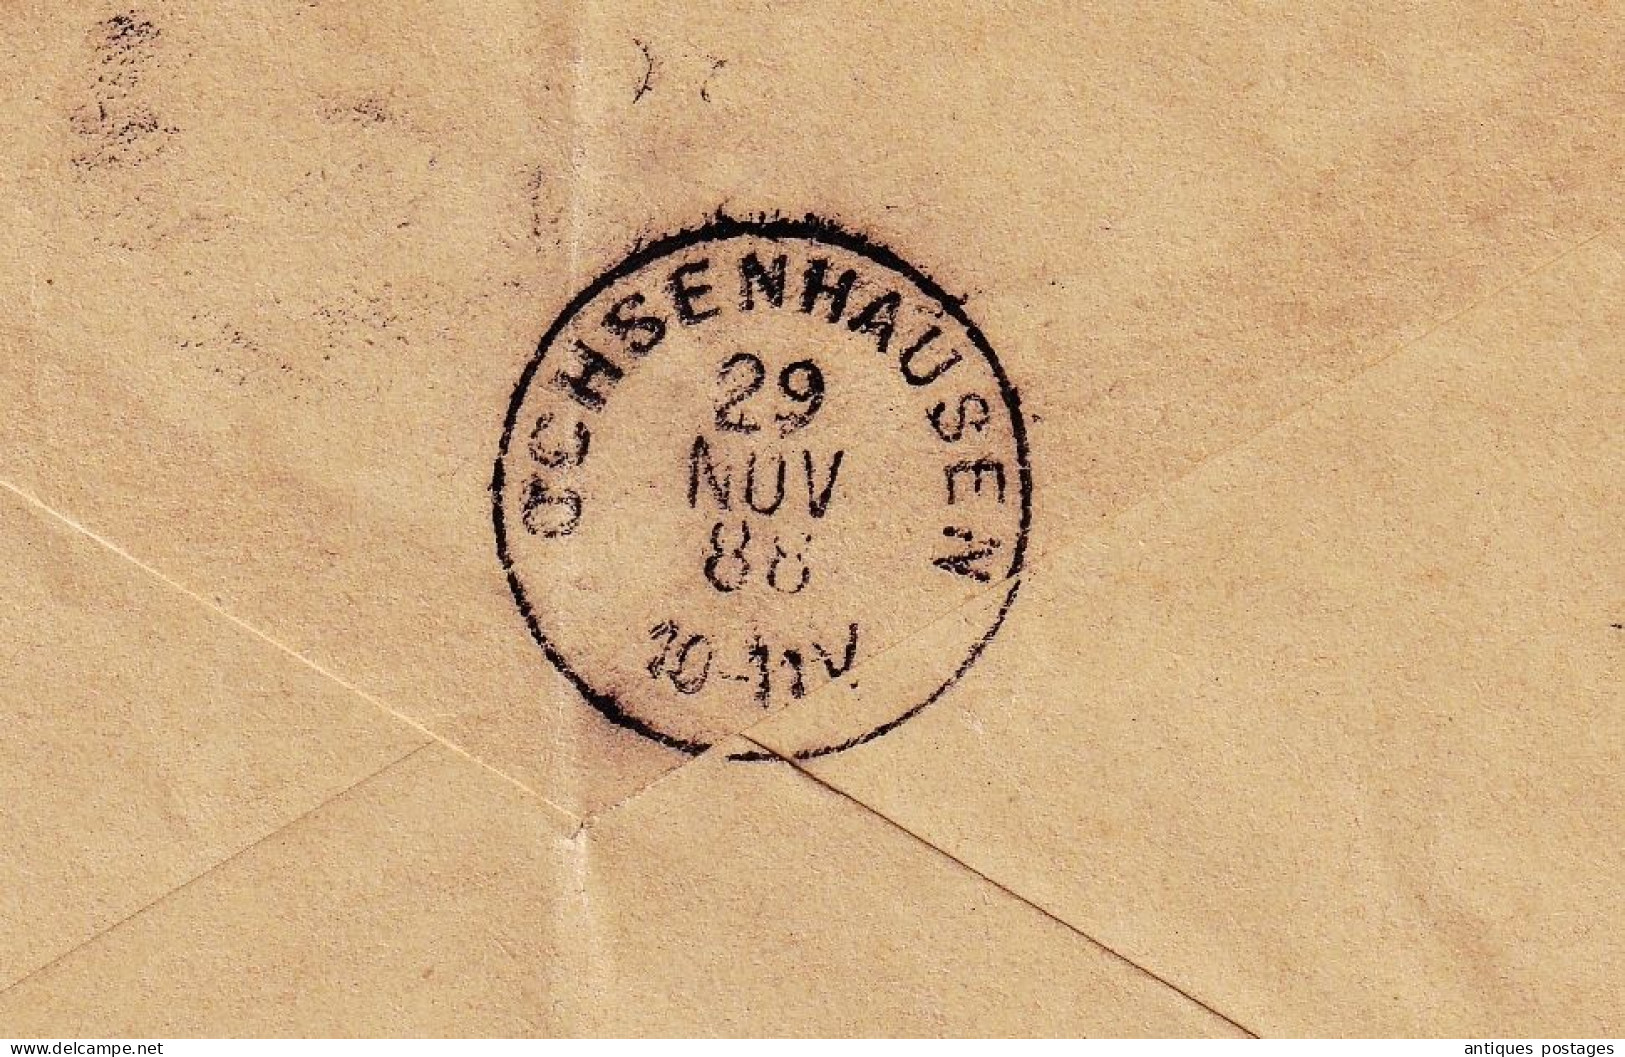 Postal Stationery 1888 Warthausen Ochsenhausen Deutschland Allemagne